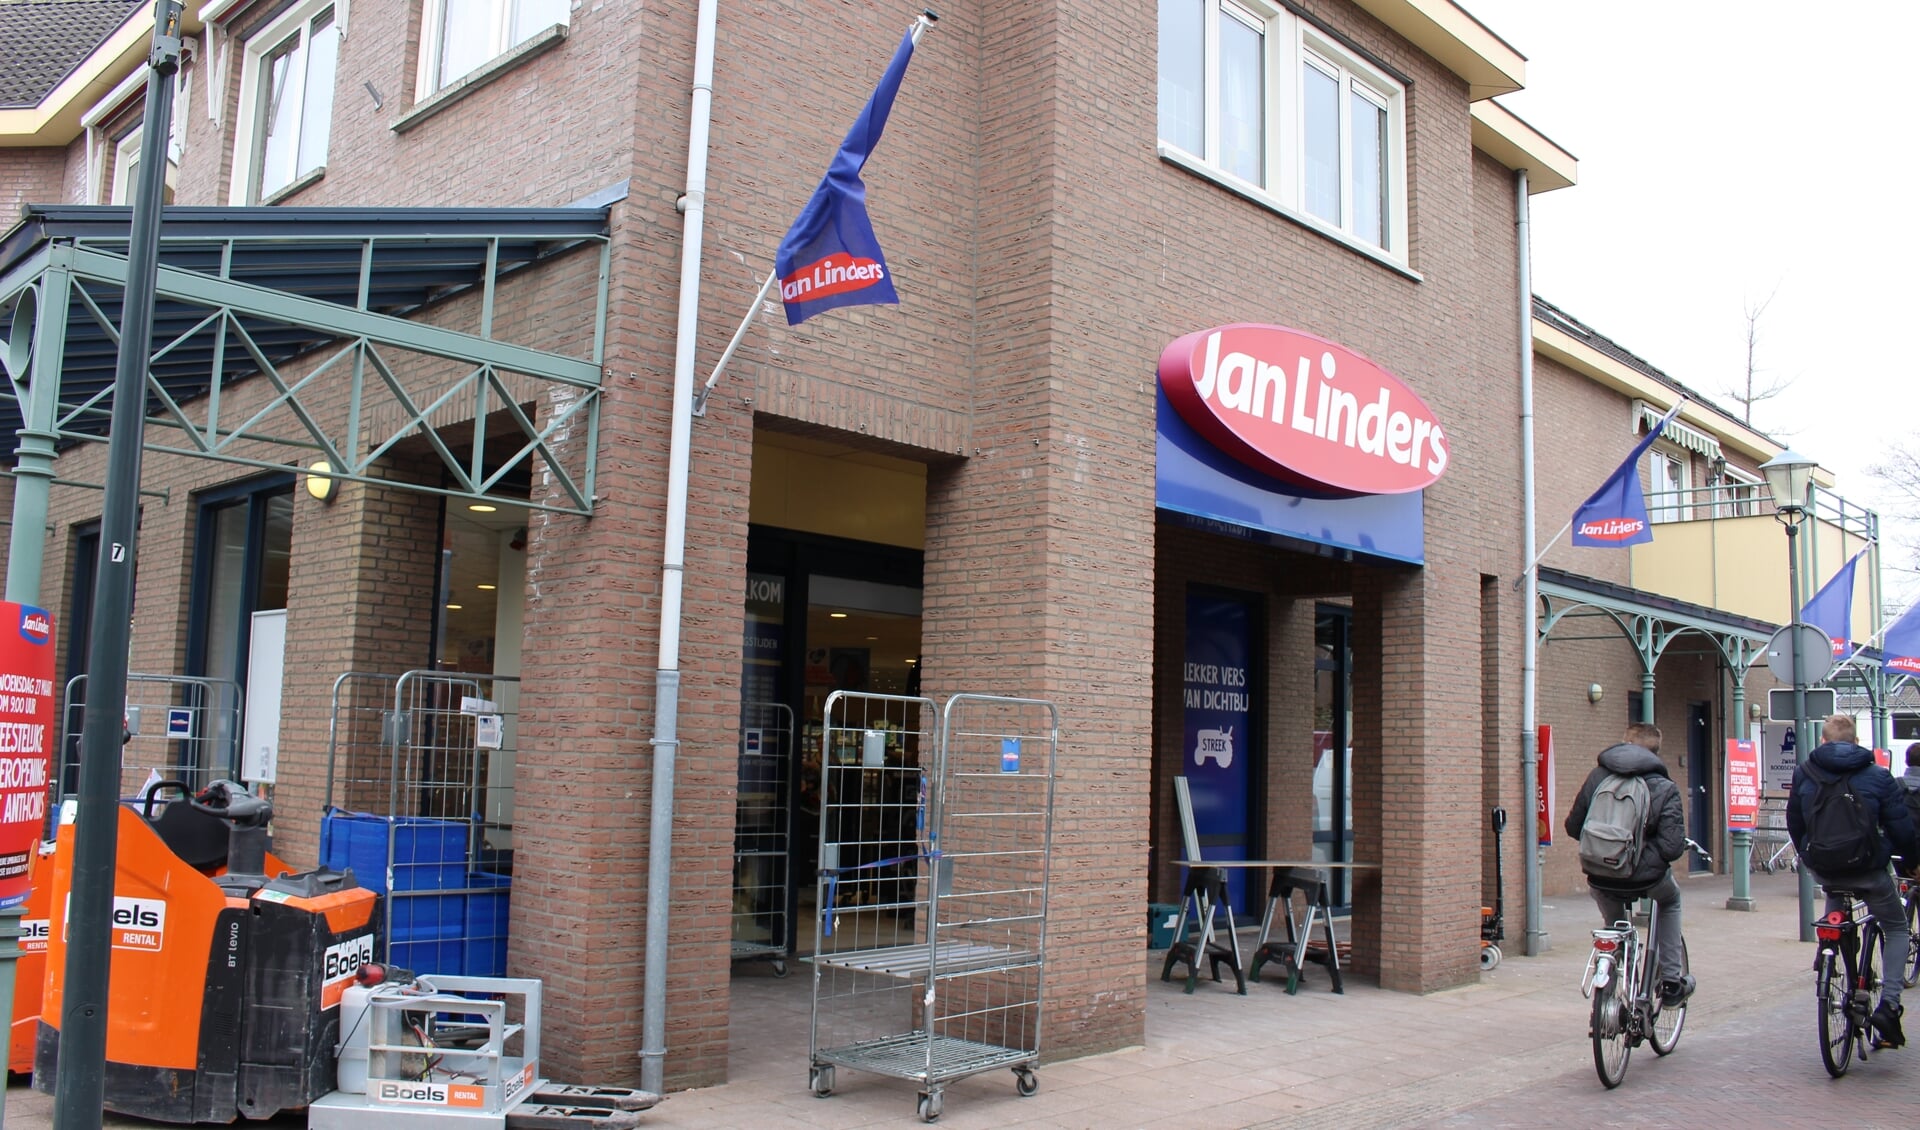 De feestelijke opening van Jan Linders stond voor woensdag gepland, maar gaat niet door. (foto: Aileen van Tilburg)